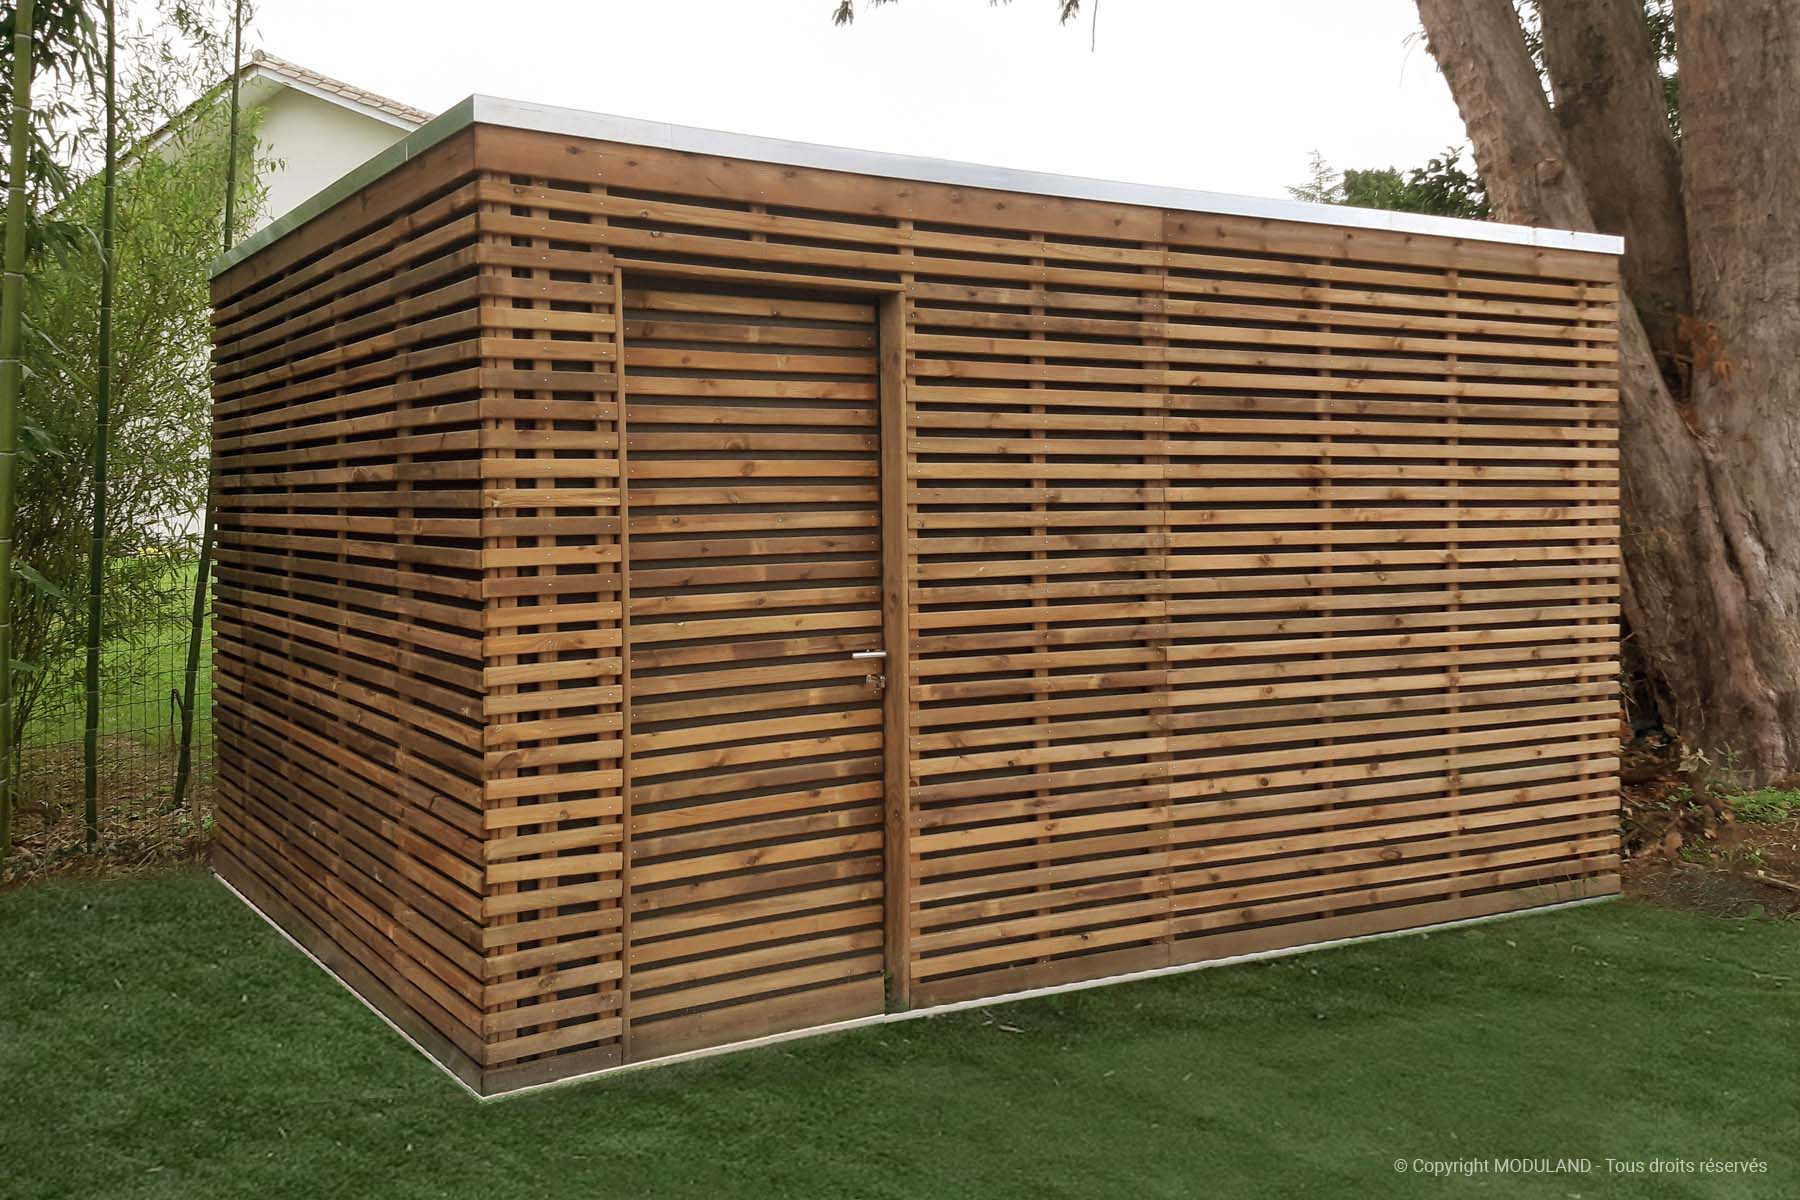 Fabricant D'abris Et Structures Bois Sur Mesure | Moduland intérieur Abri De Jardin Thonon 20M2